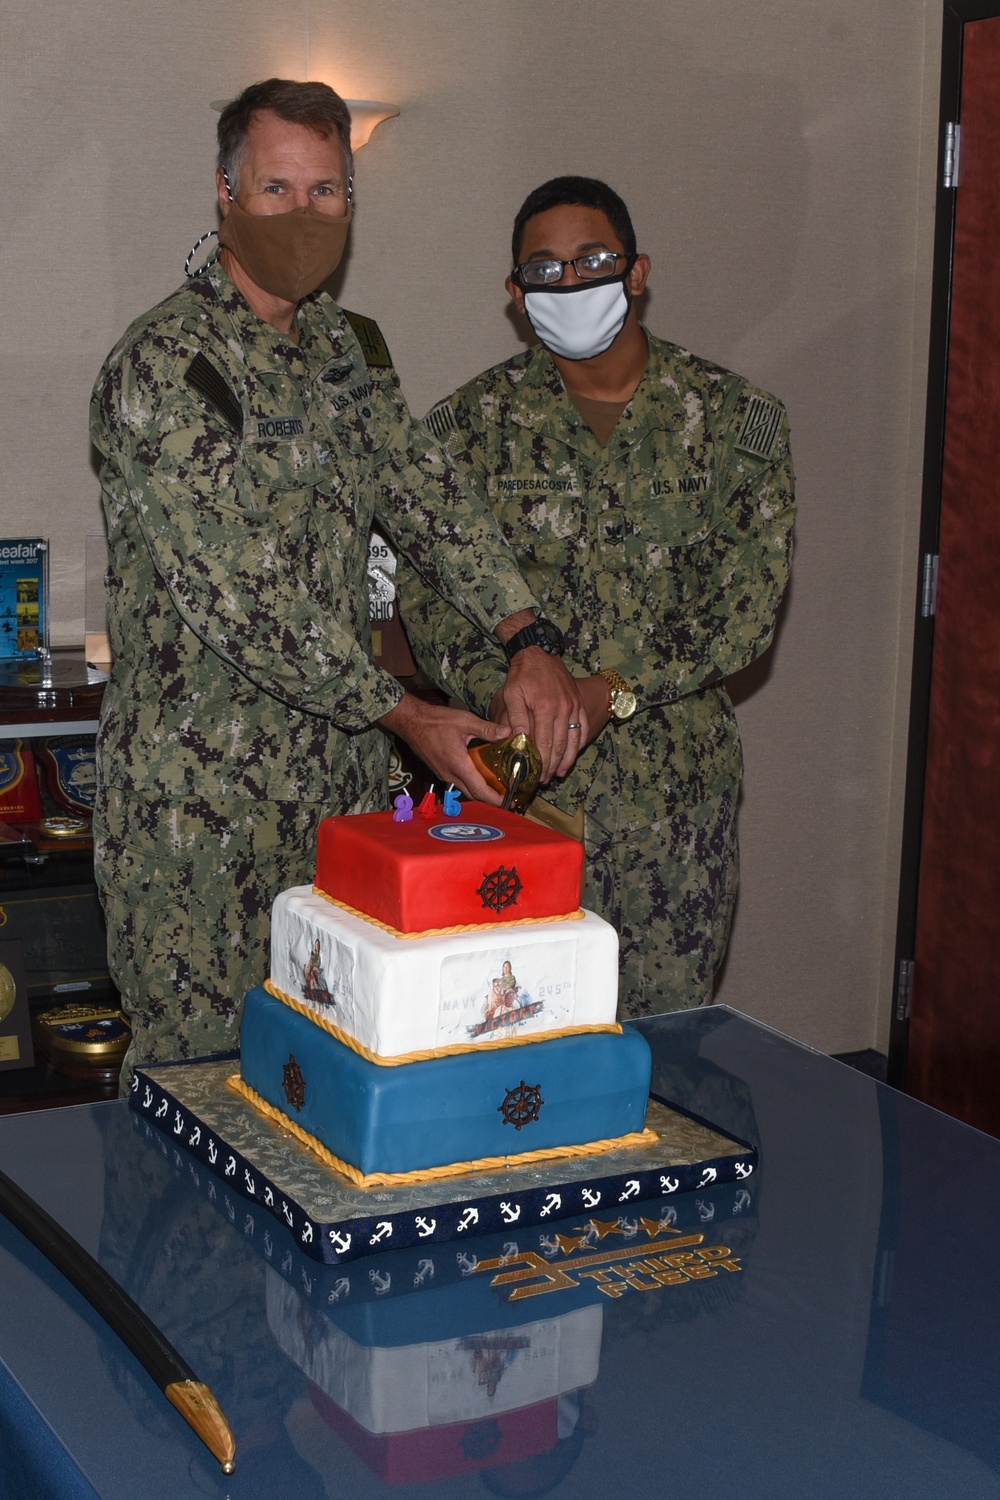 Navy Birthday